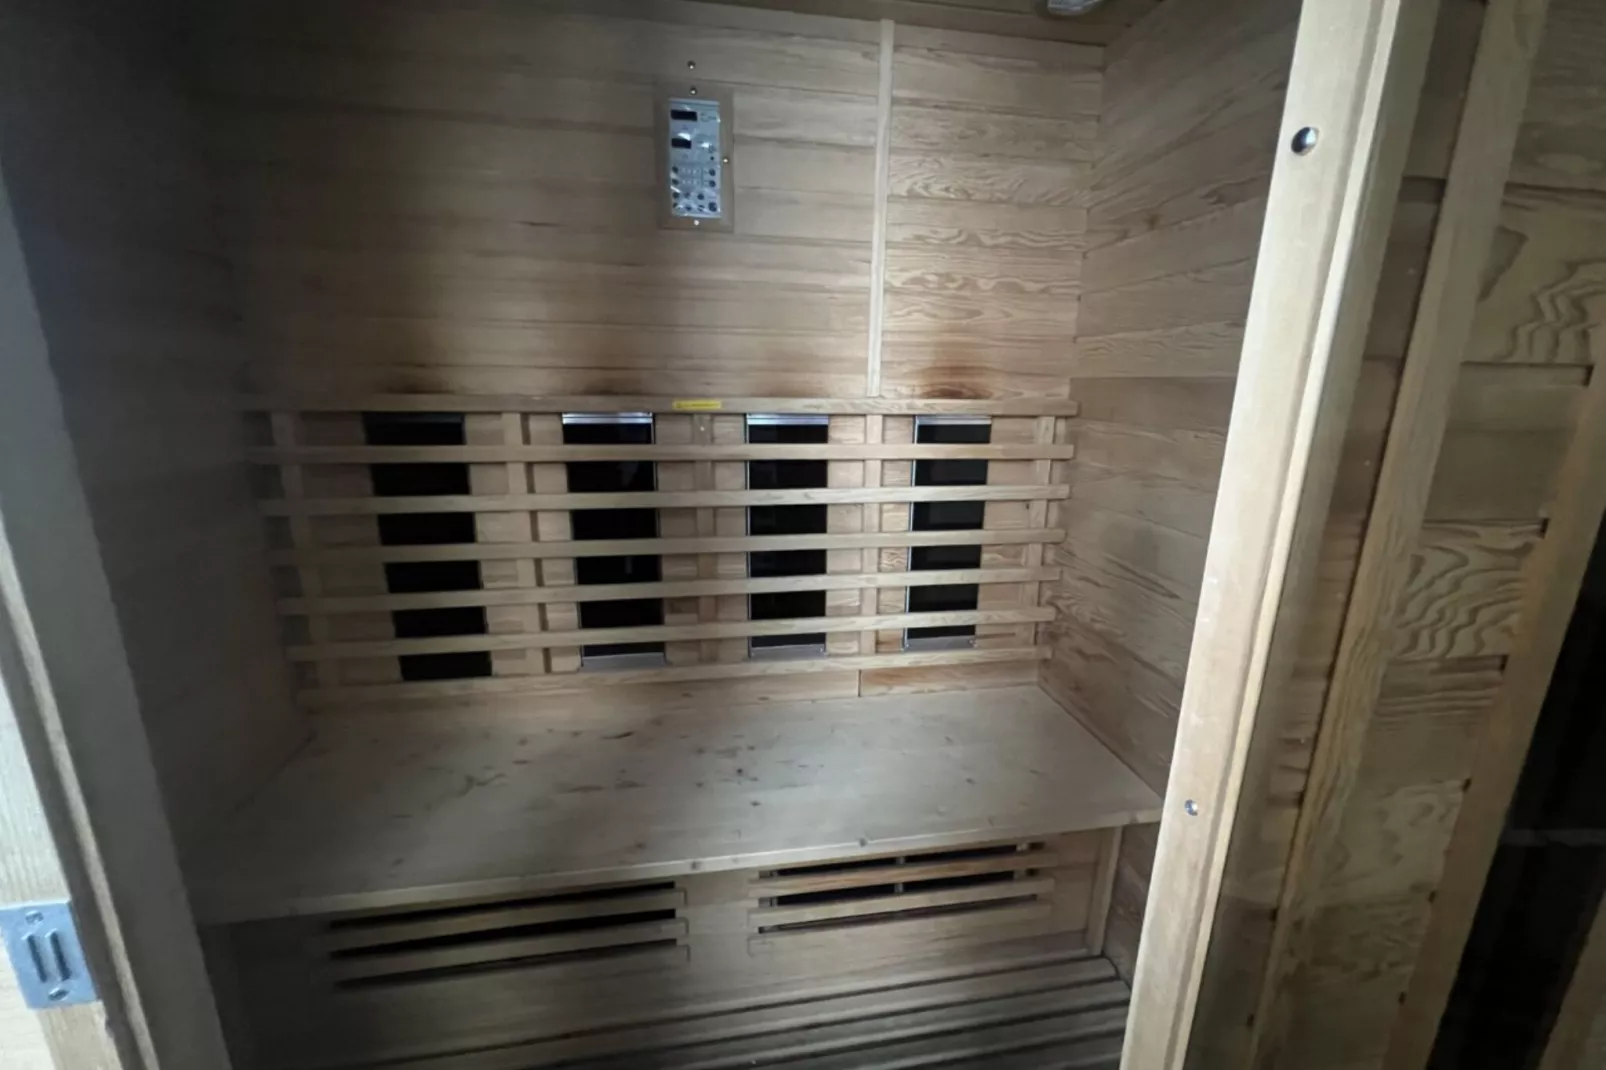 Magnifique maison de vacances pour 10 adultes avec pscine intérieure  Sauna Bains à remous et  Hamam-Wellness